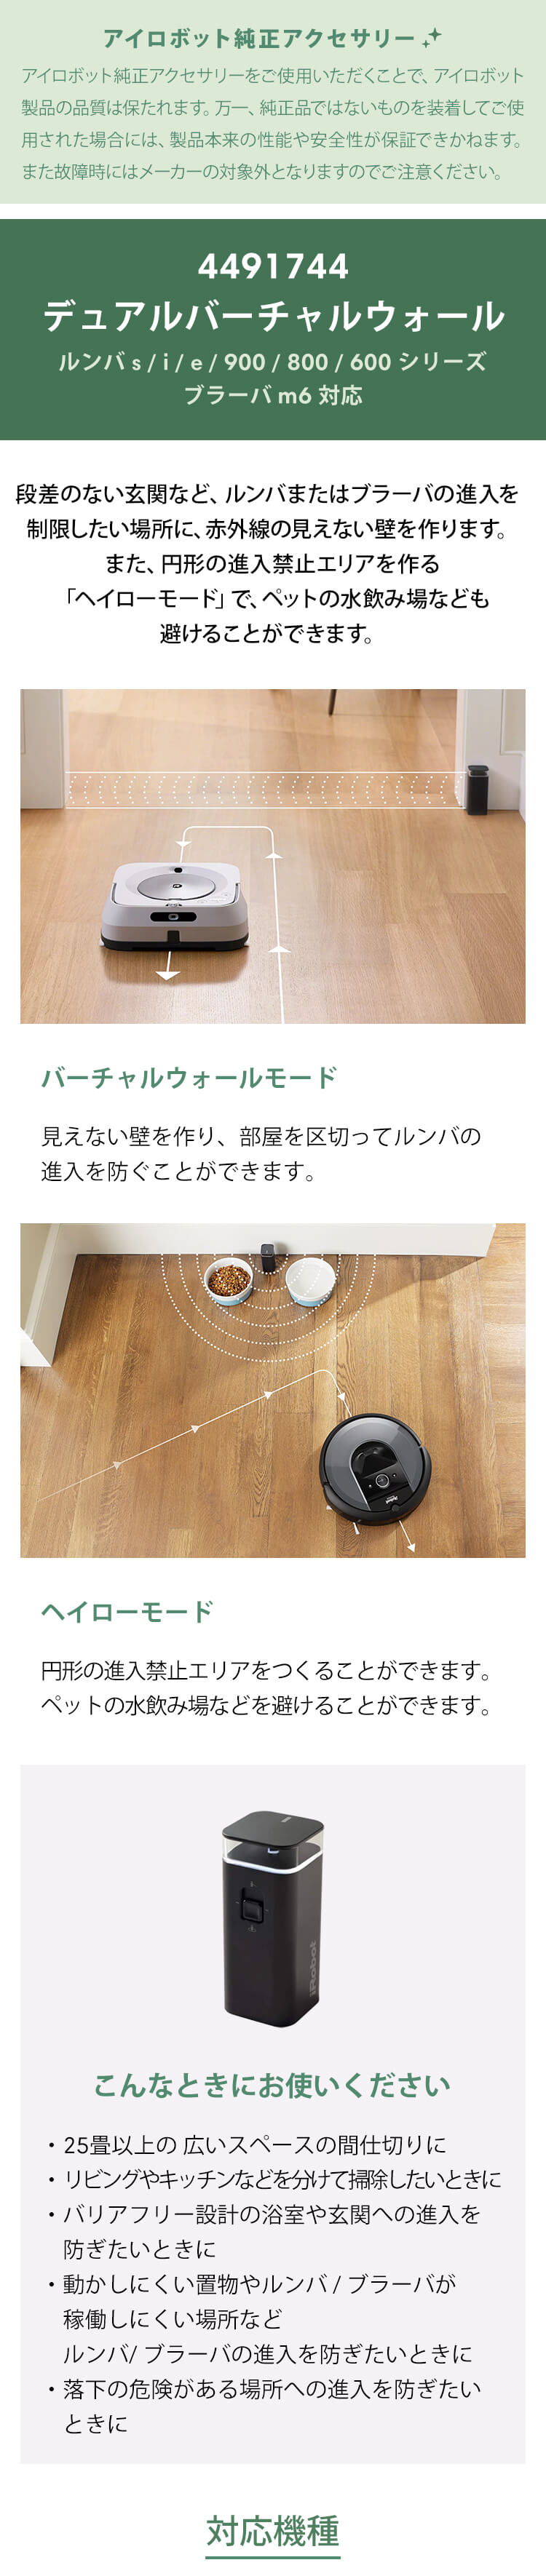 iRobot Roomba ルンバ デュアルバーチャルウォール - 生活家電